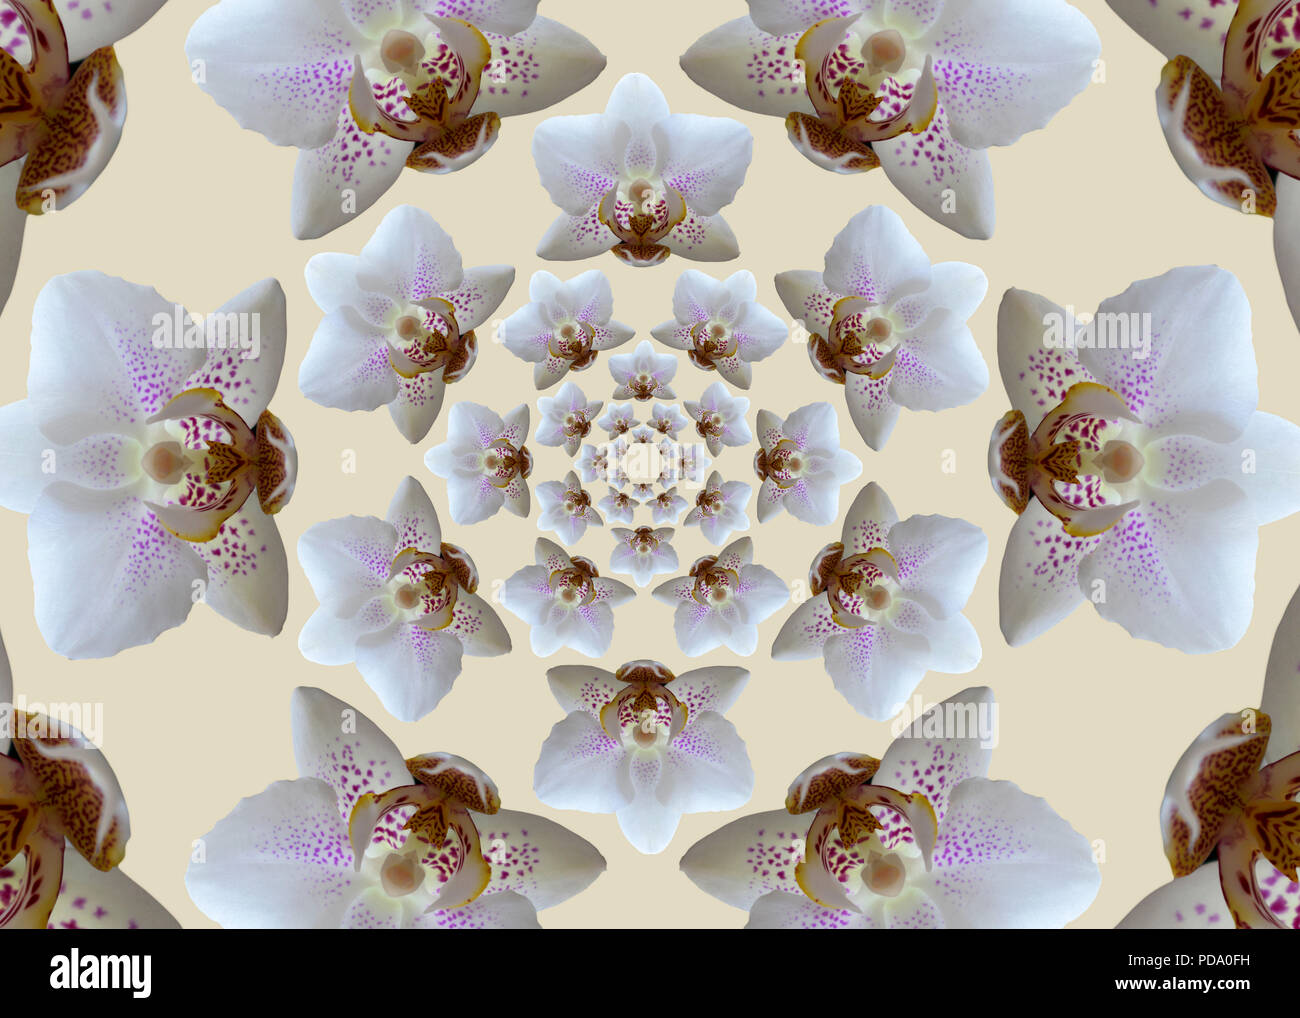 Fiori di orchidea. Bella geometrica composizione esagonale concentrico di le orchidee bianche su sfondo beige. Foto Stock